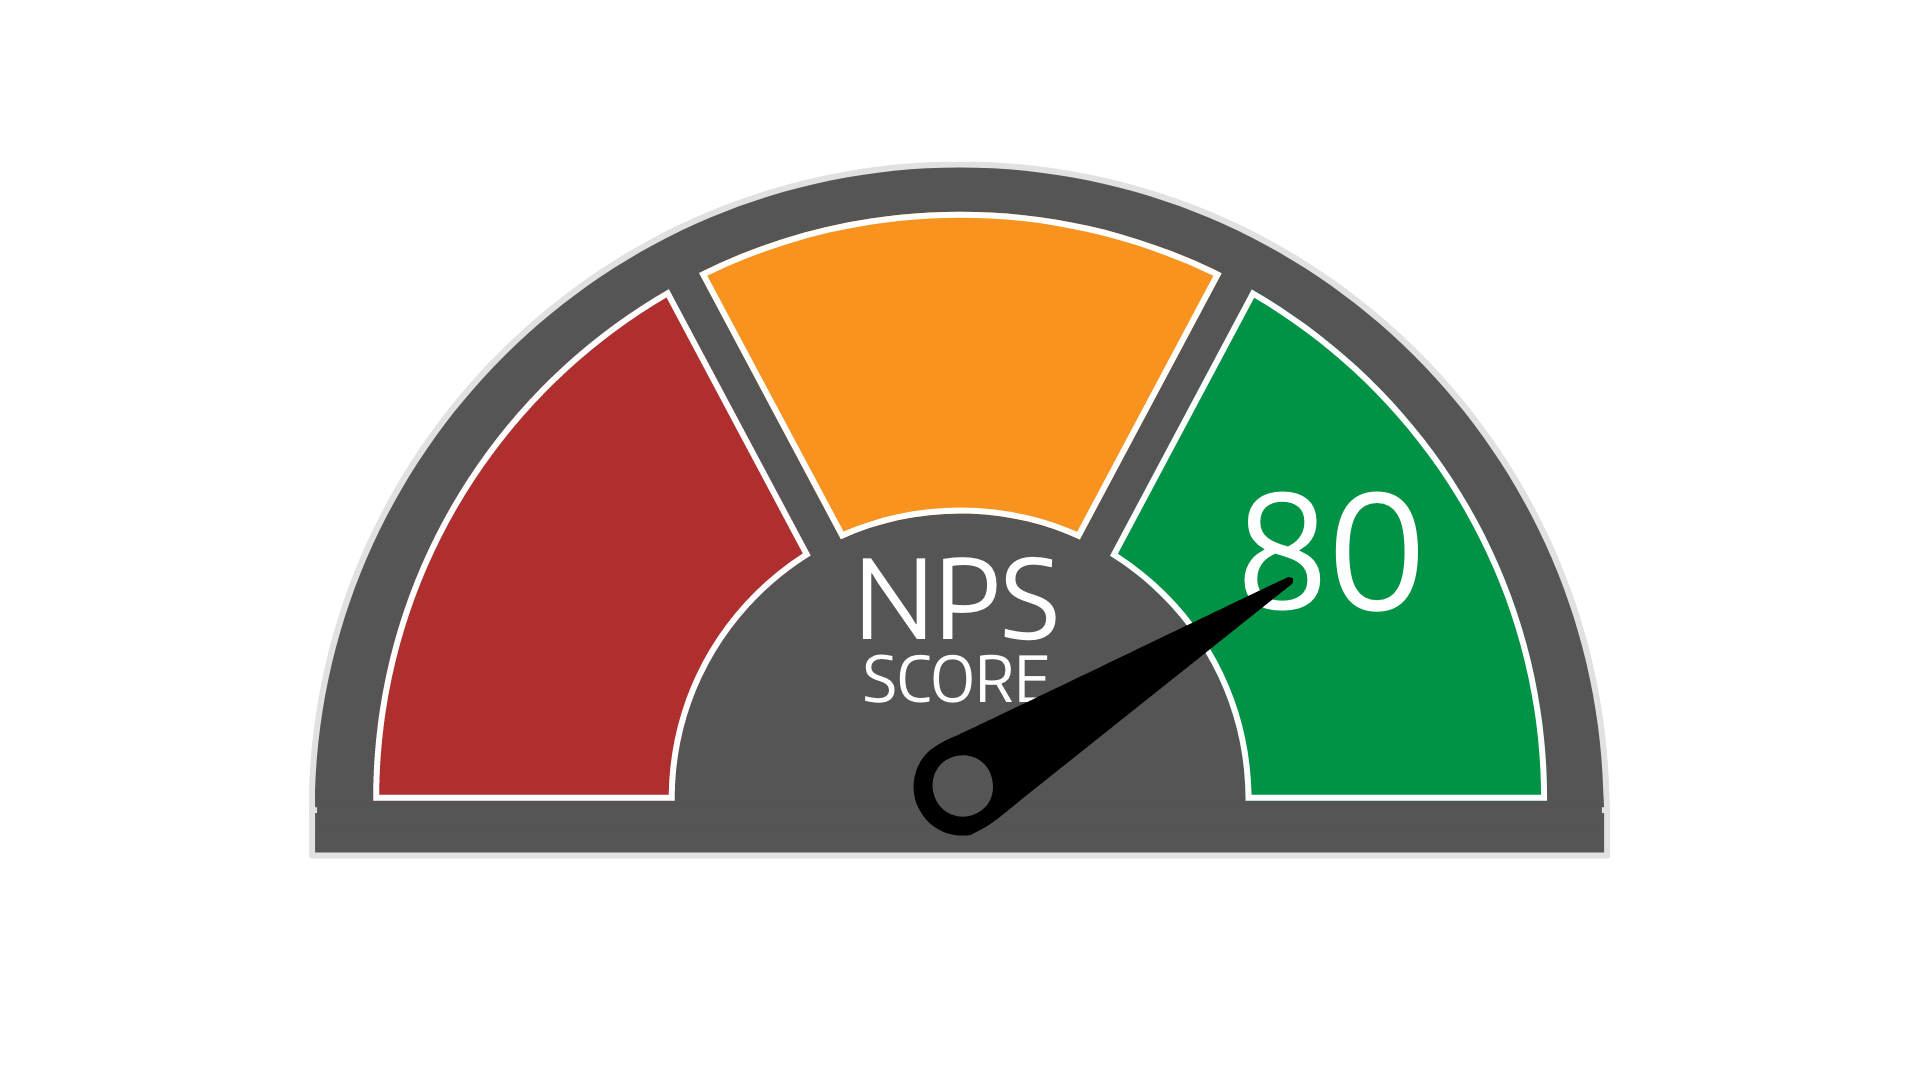 cc_NPS-Score-80_1920x1080-5.0